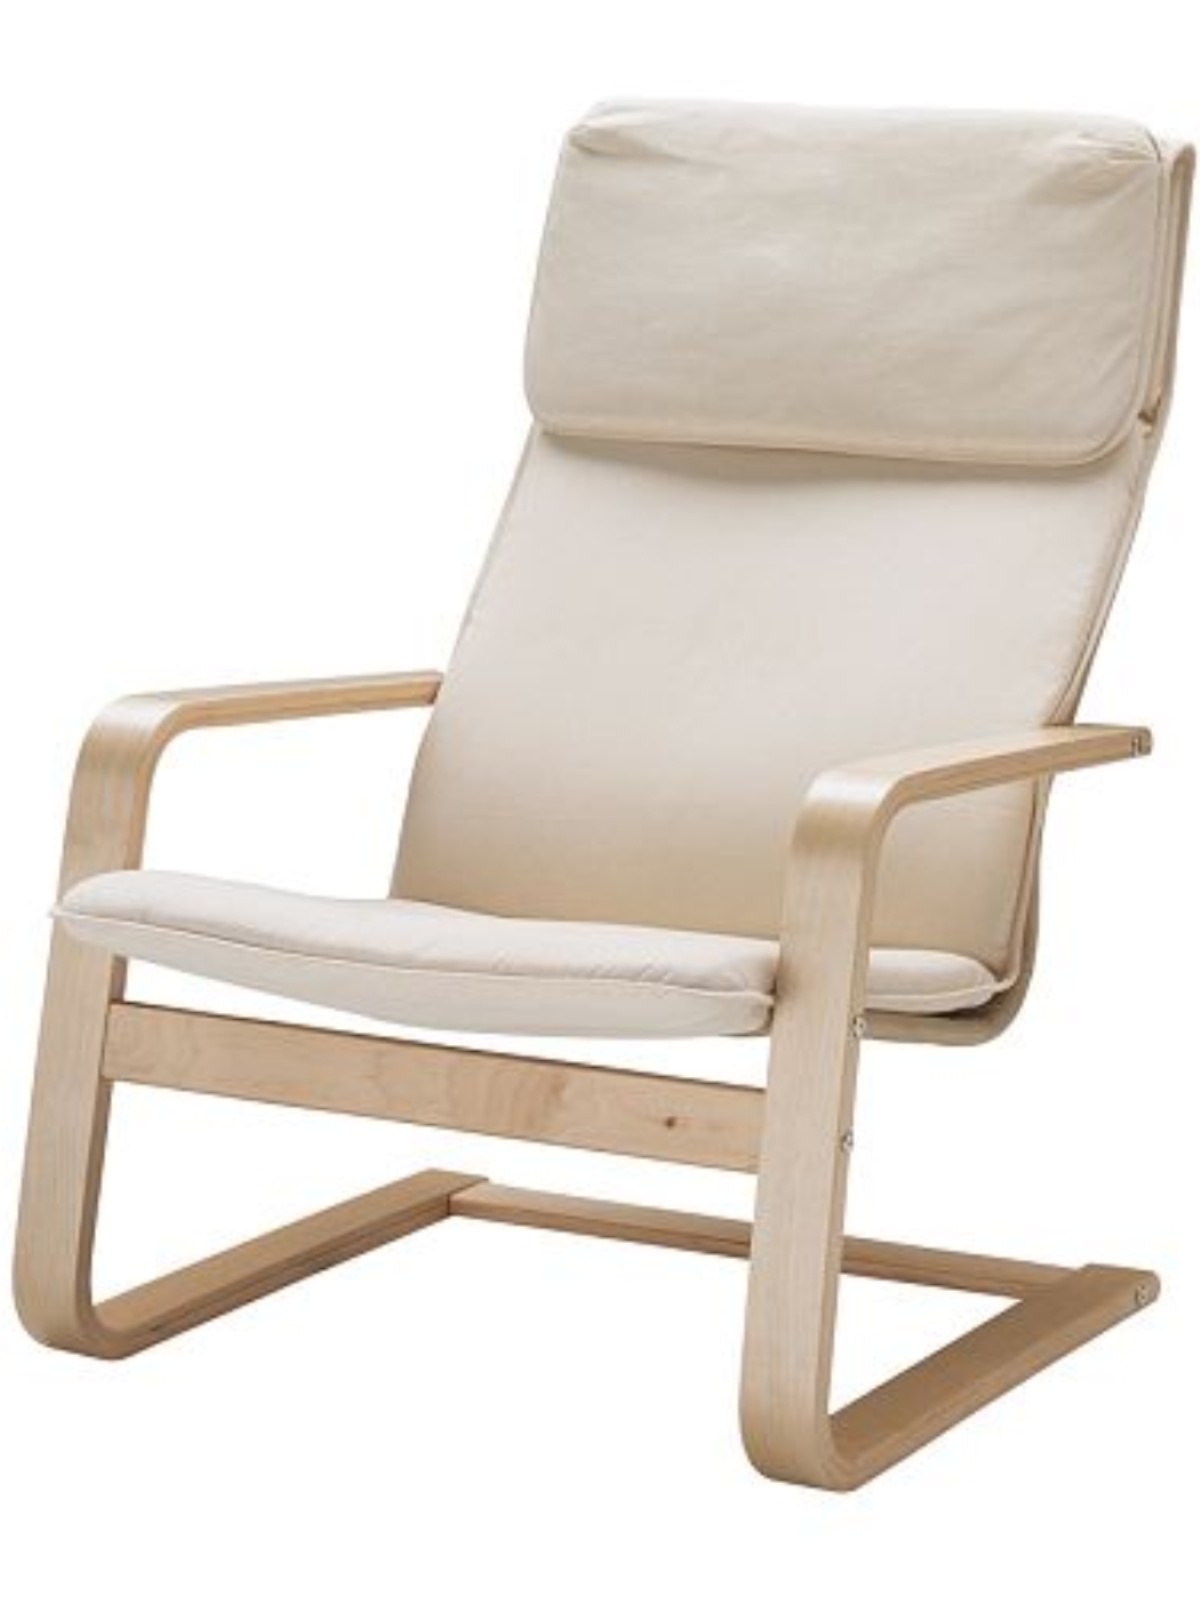 定制波昂休闲椅孕妇躺椅摇椅户外客厅曲木摇椅沙发椅扶手椅阳台椅